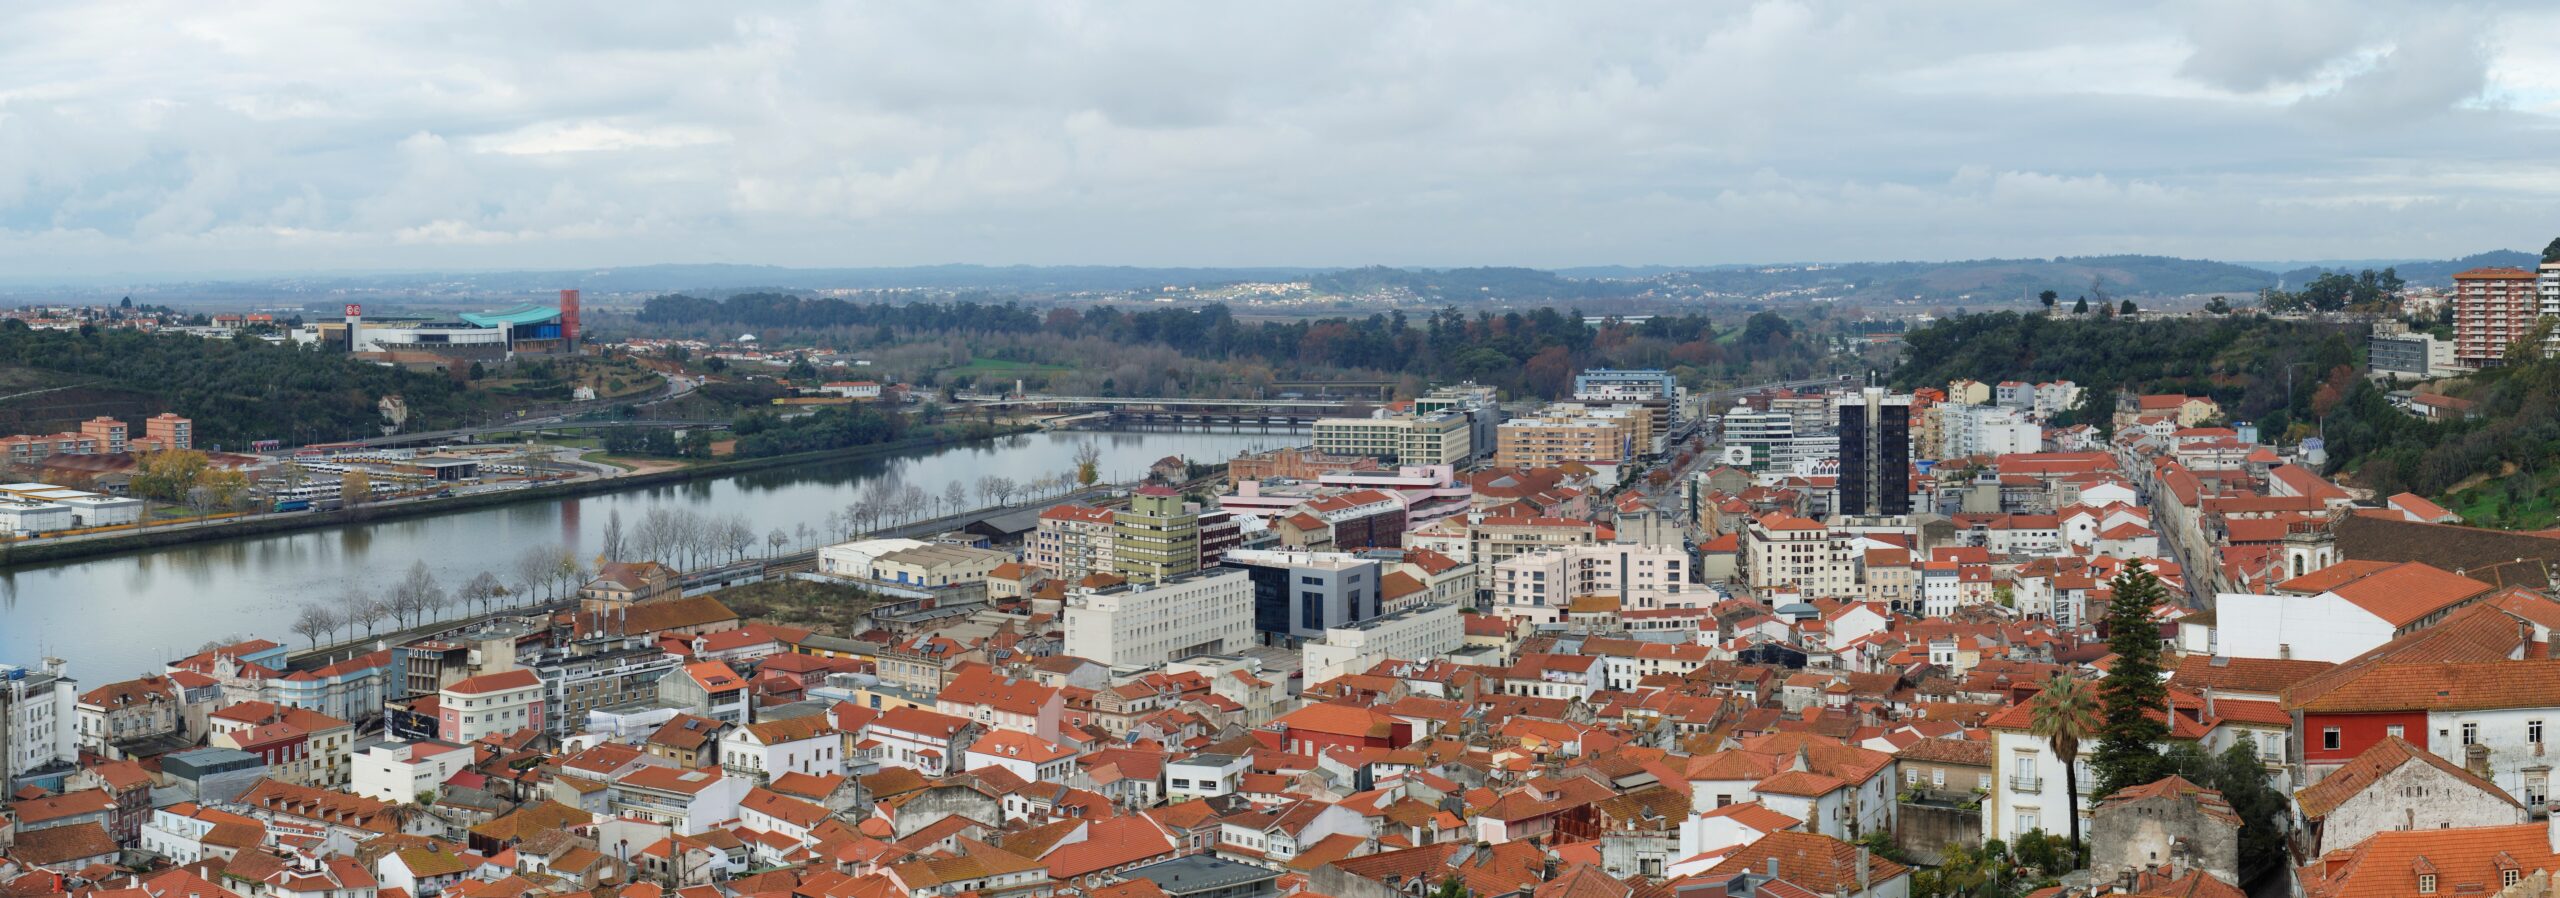 Vista panorâmica da cidade de Coimbra